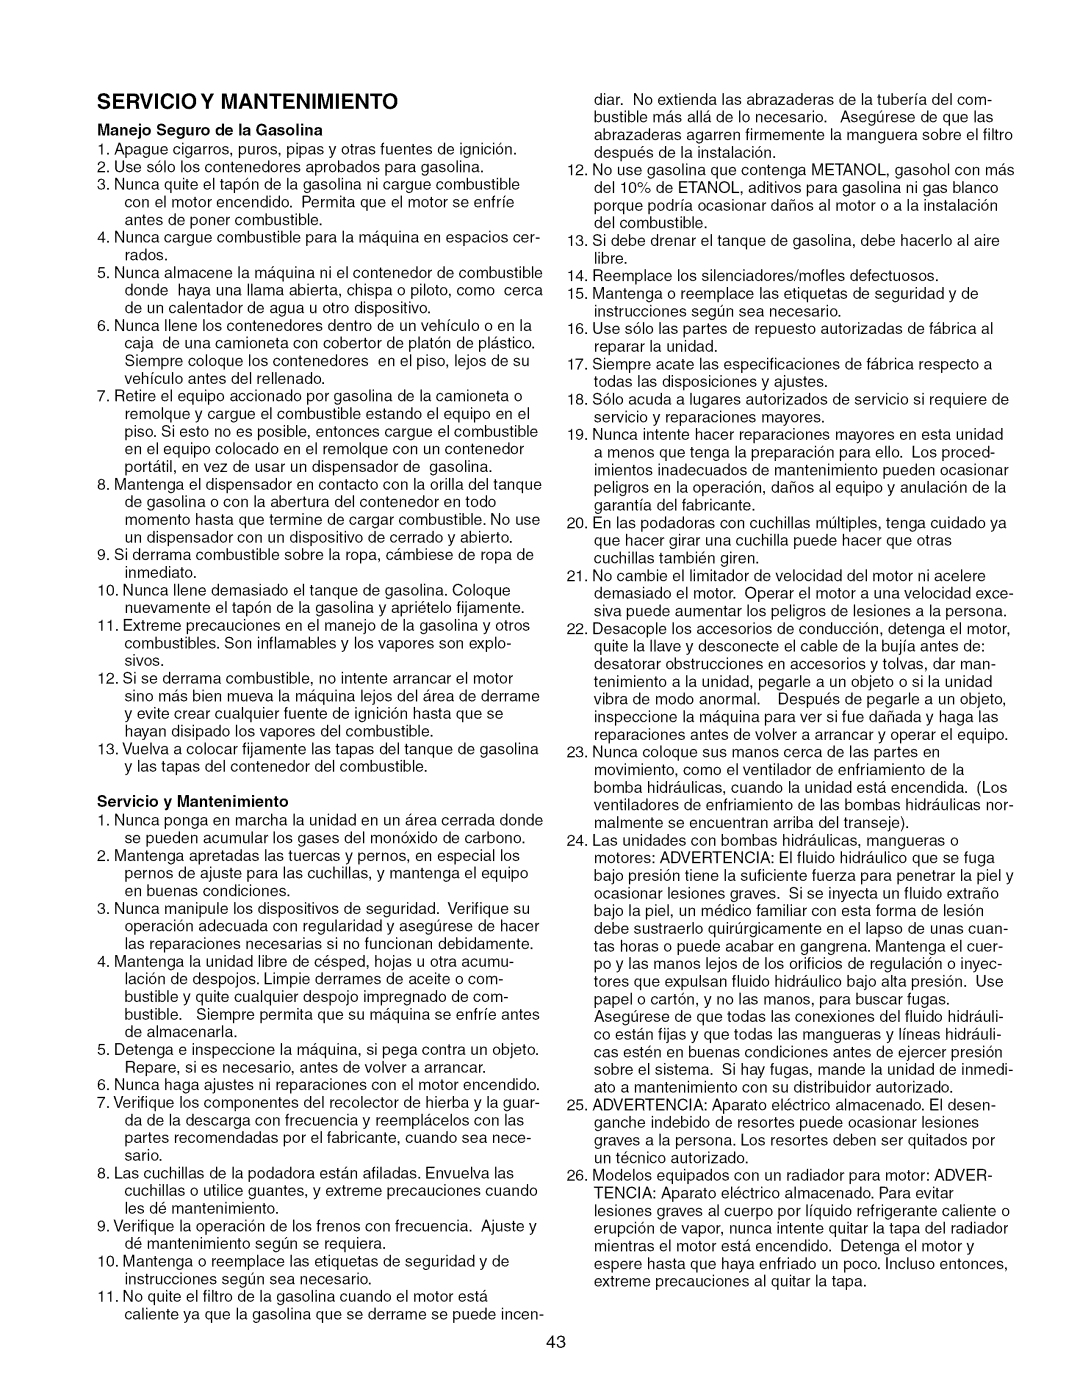 Craftsman 107.289860, ZTS 6000 manual Servicio Y Mantenimiento, Manejo Seguro de la Gasolina, Servicio y Mantenimiento 